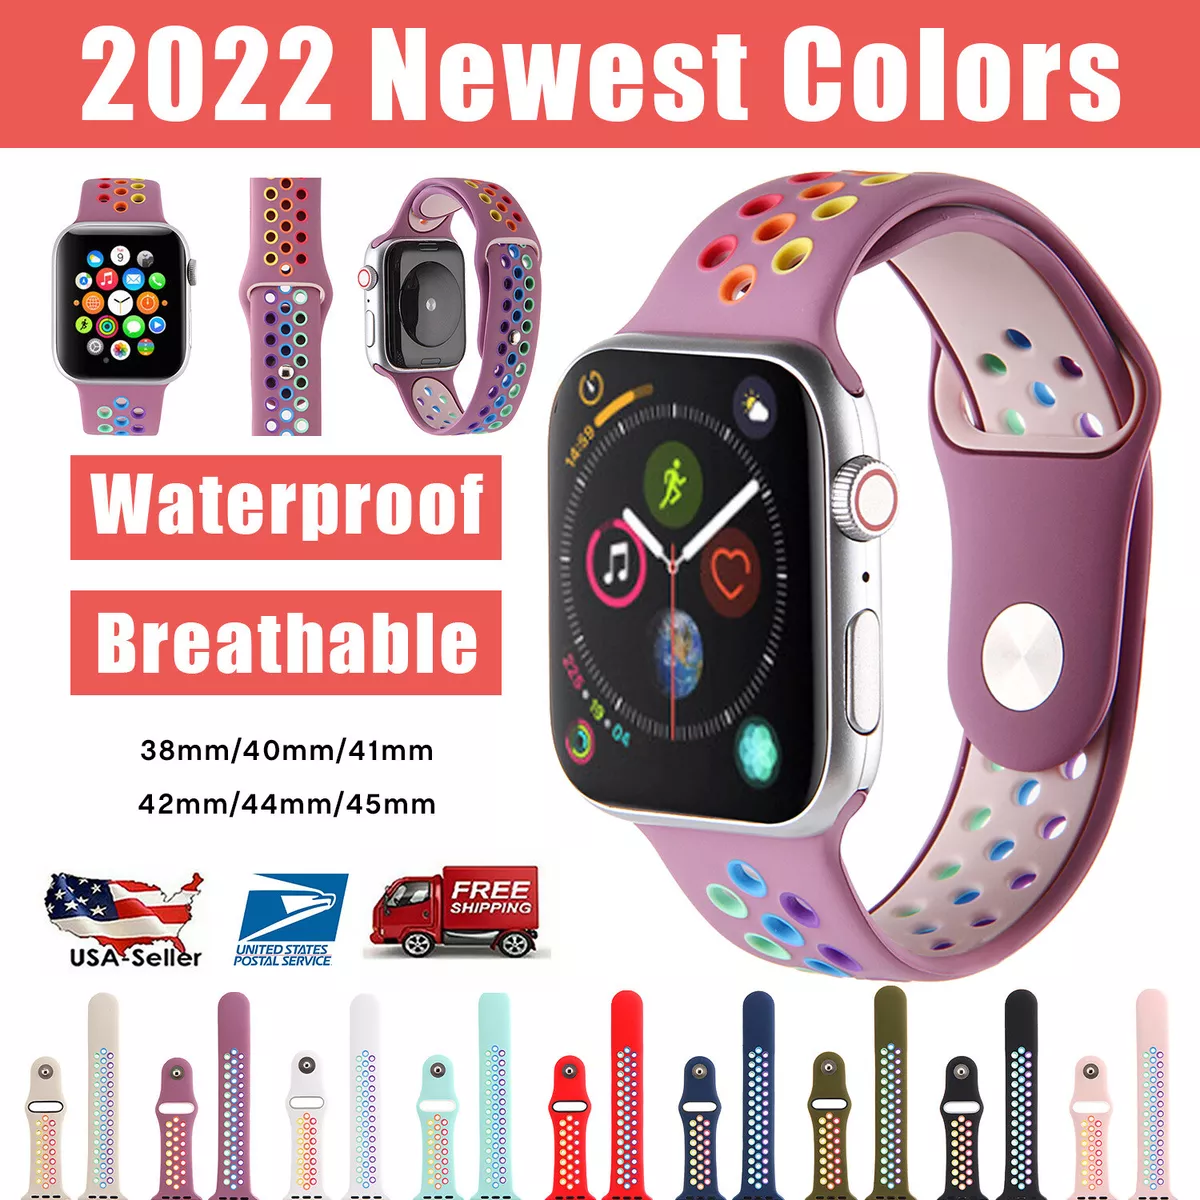 Bracelet Apple Watch Series 4 44mm Size L  Sports Strap Apple Watch Sports  - Smart Accessories - Aliexpress